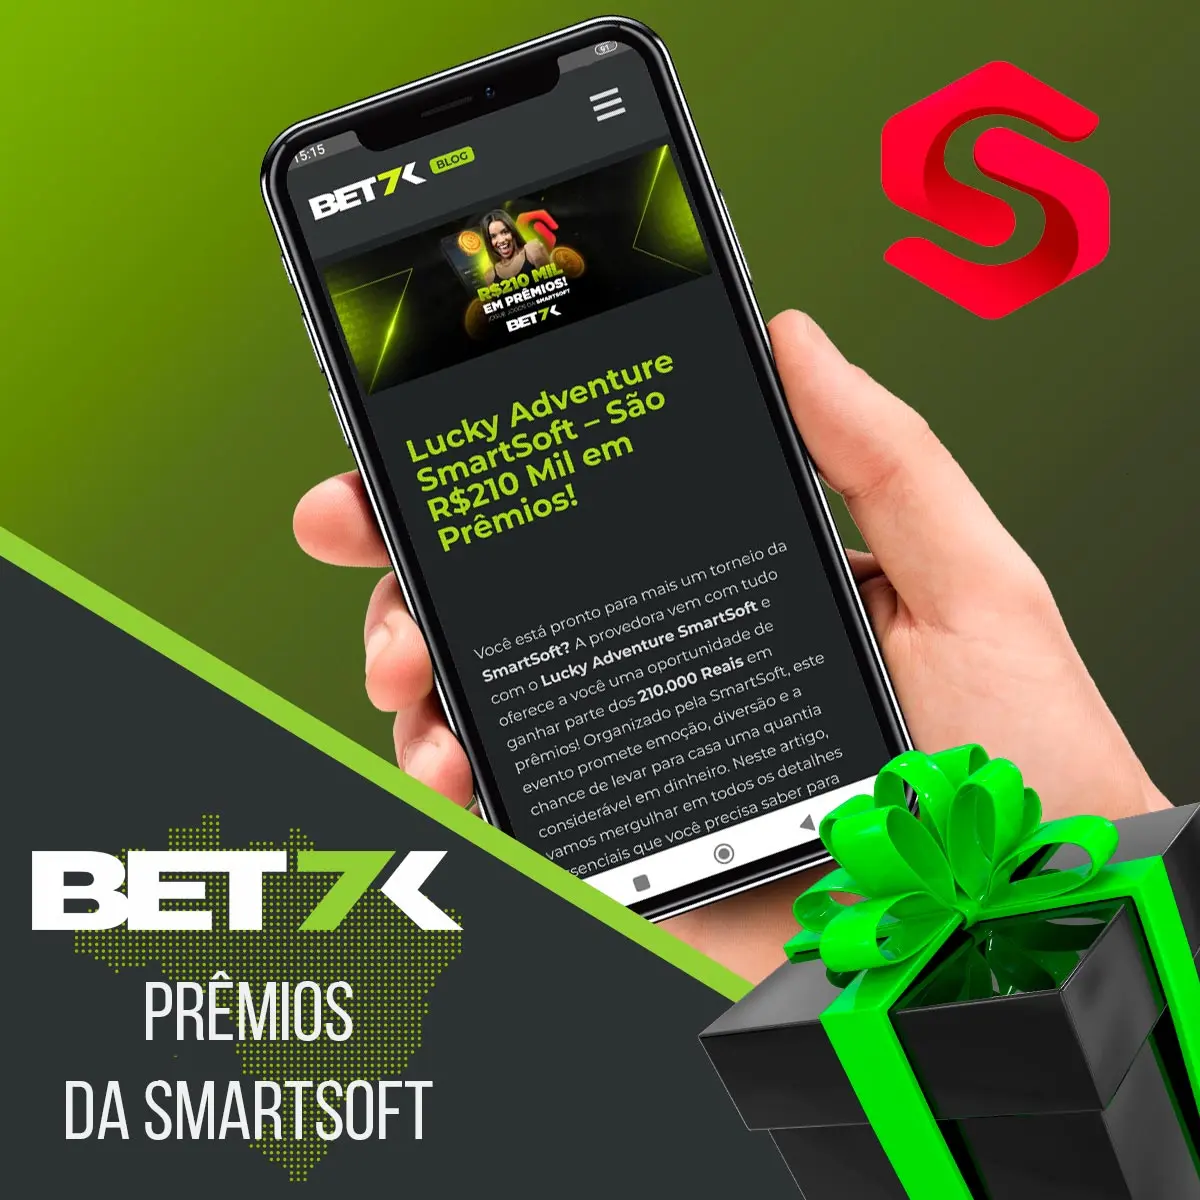 Prêmios Bet7k da Smartsoft